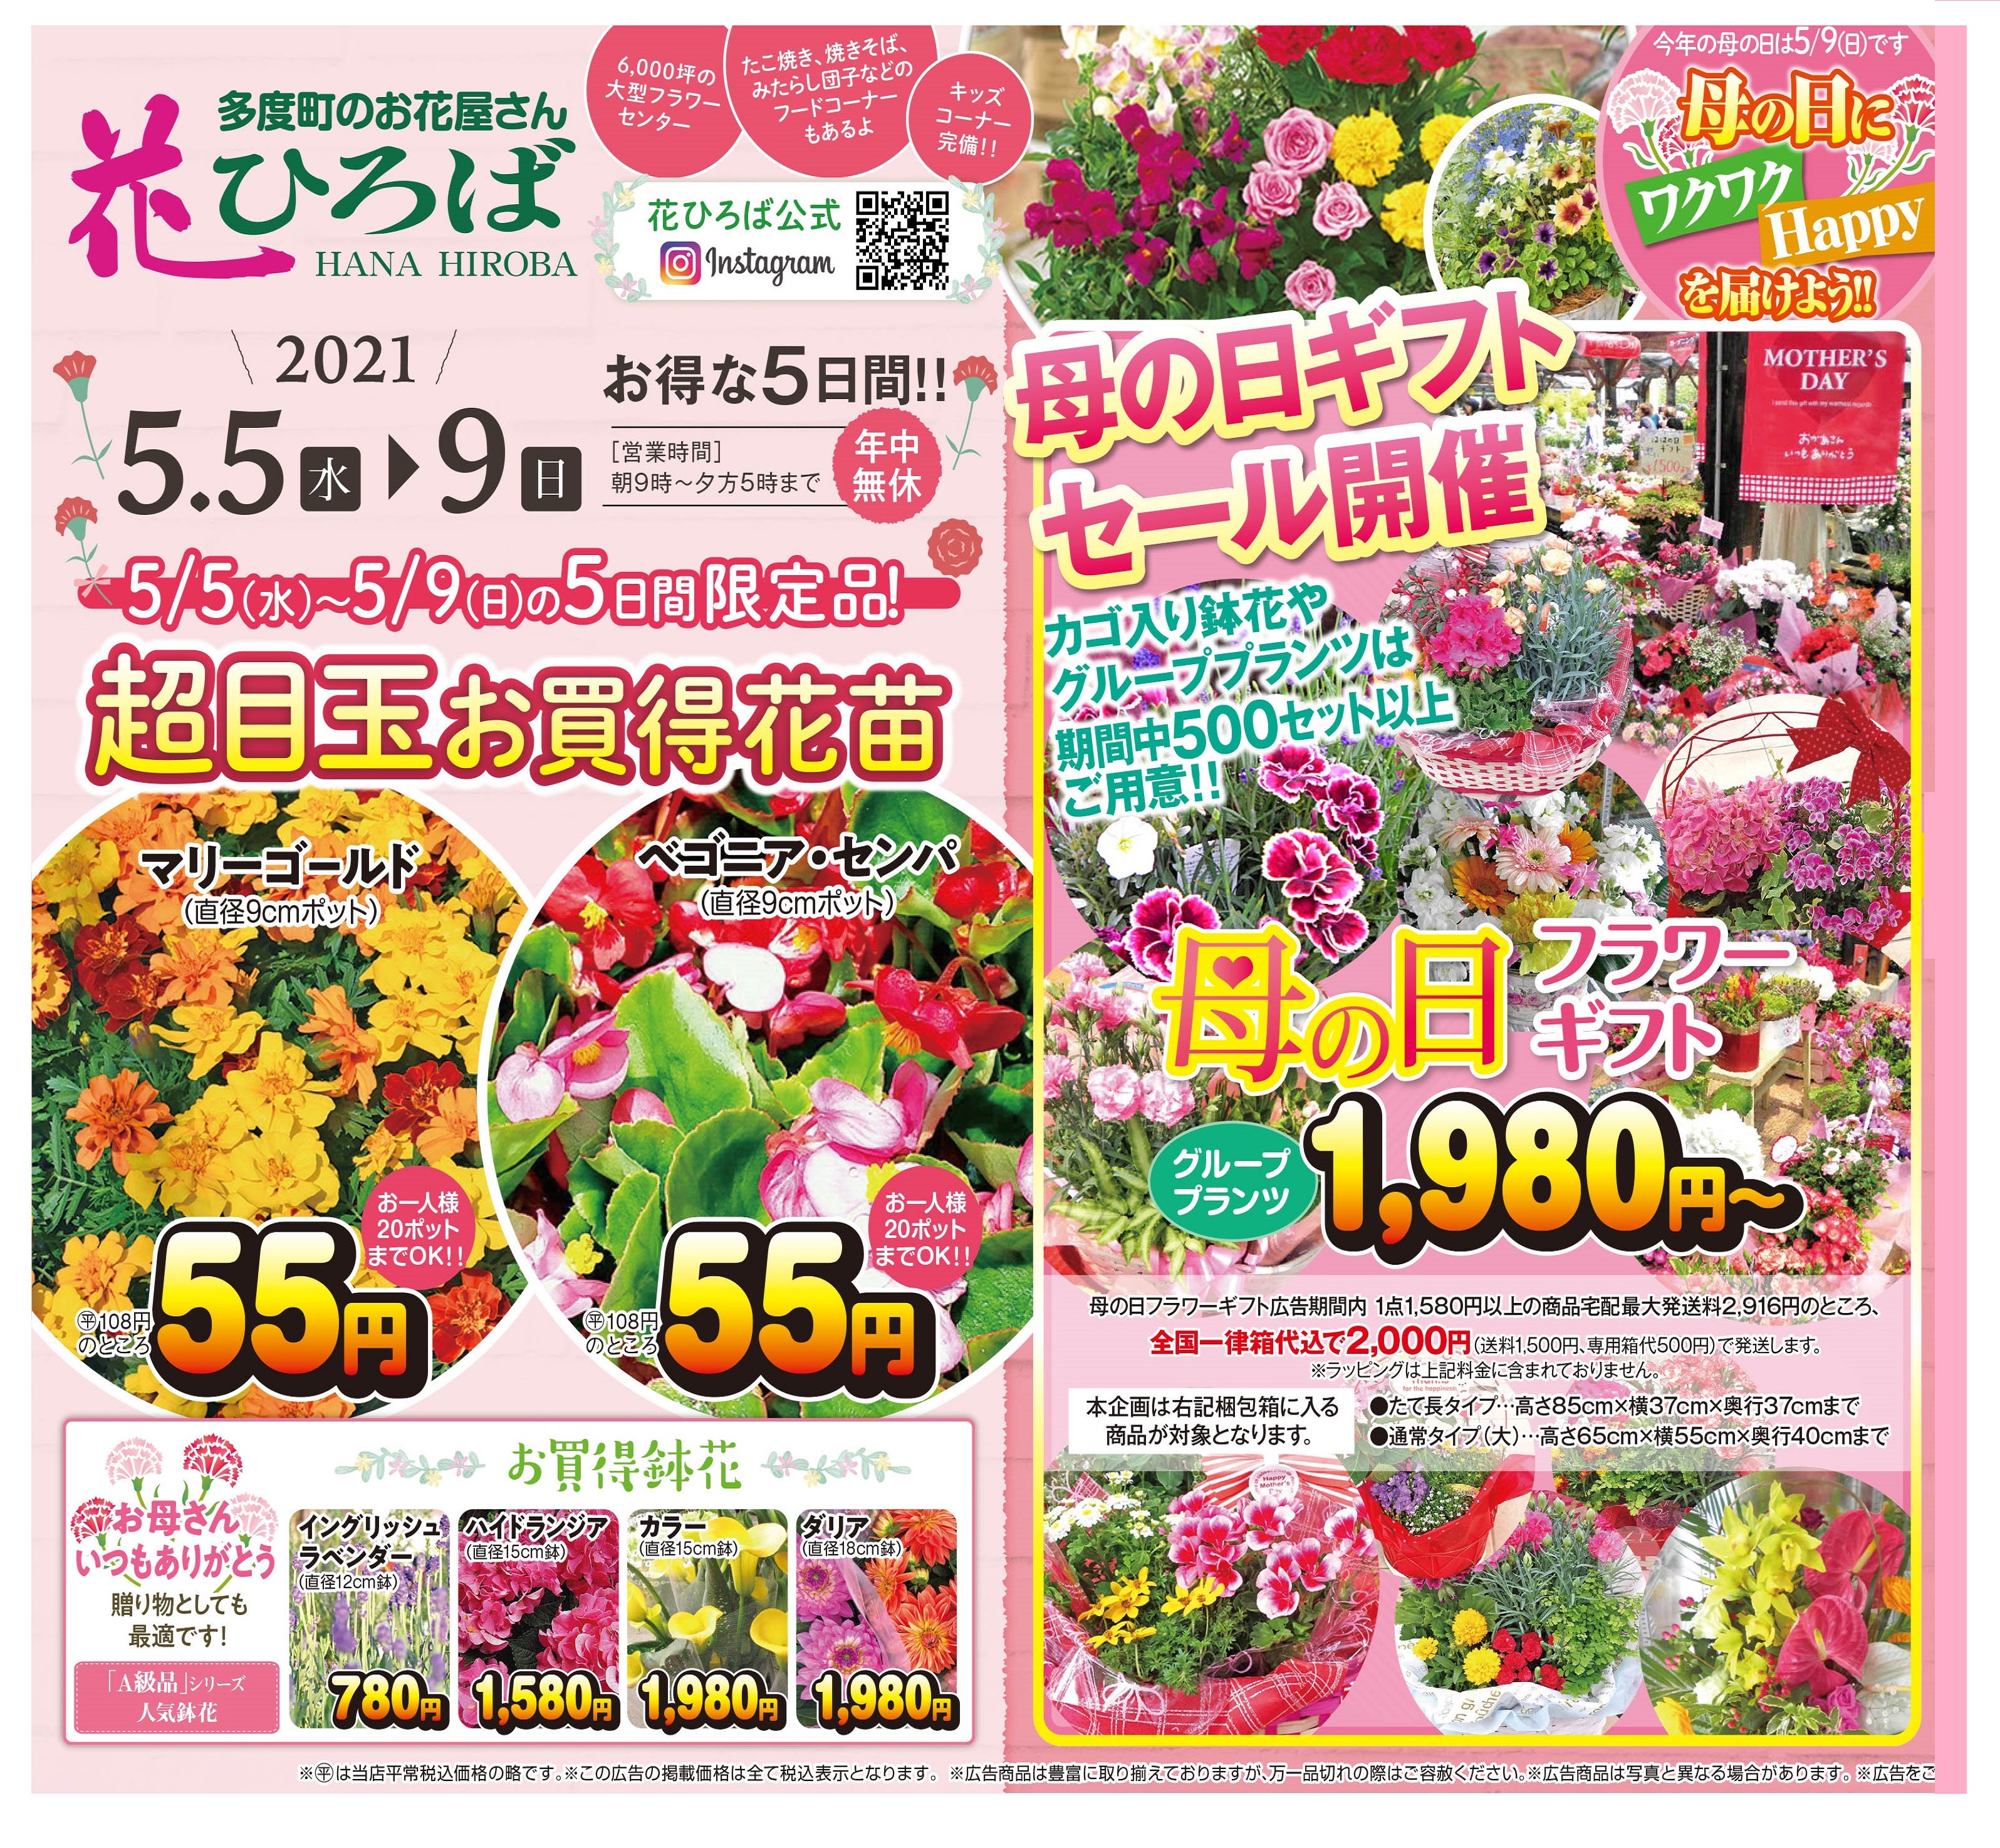 花ひろば公式サイト 桑名市多度町でお花さがすなら 花ひろば へ